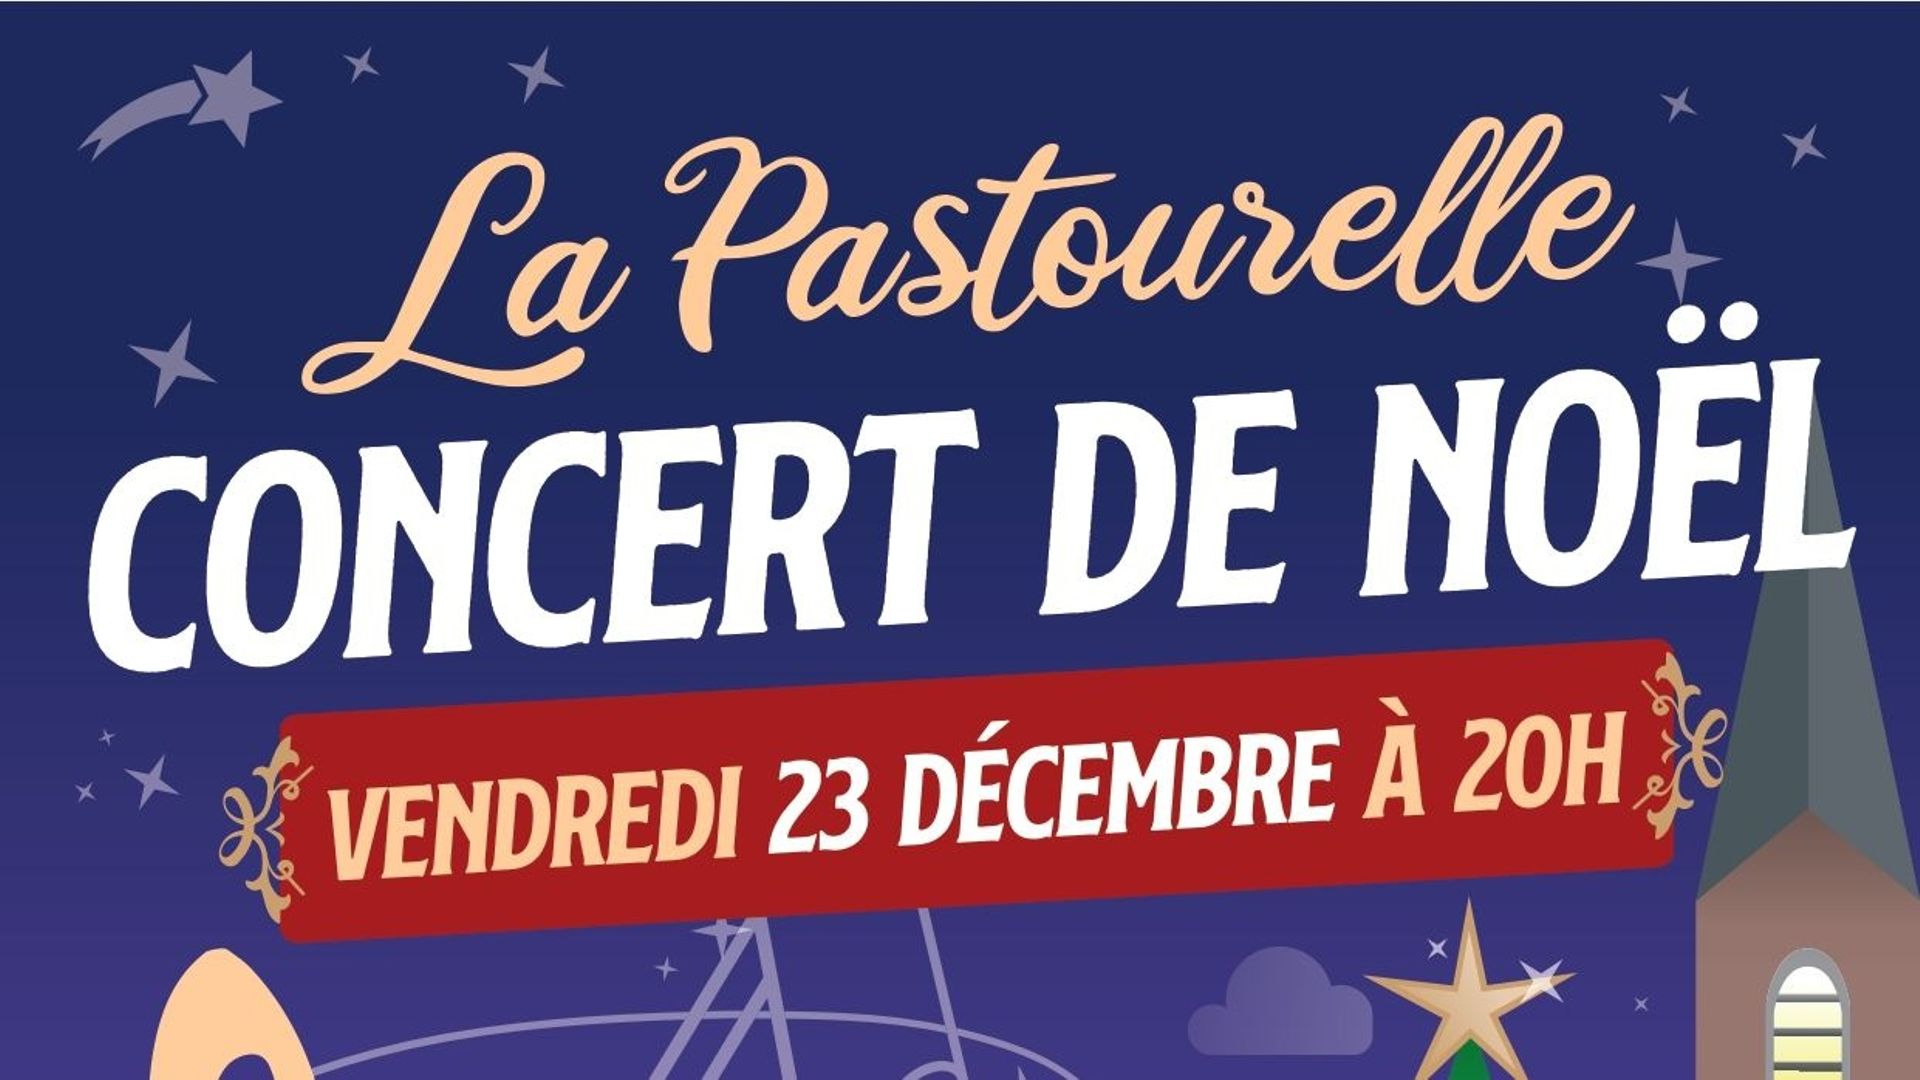 Concert de Noël "La Pastourelle" à Braine-le-Château